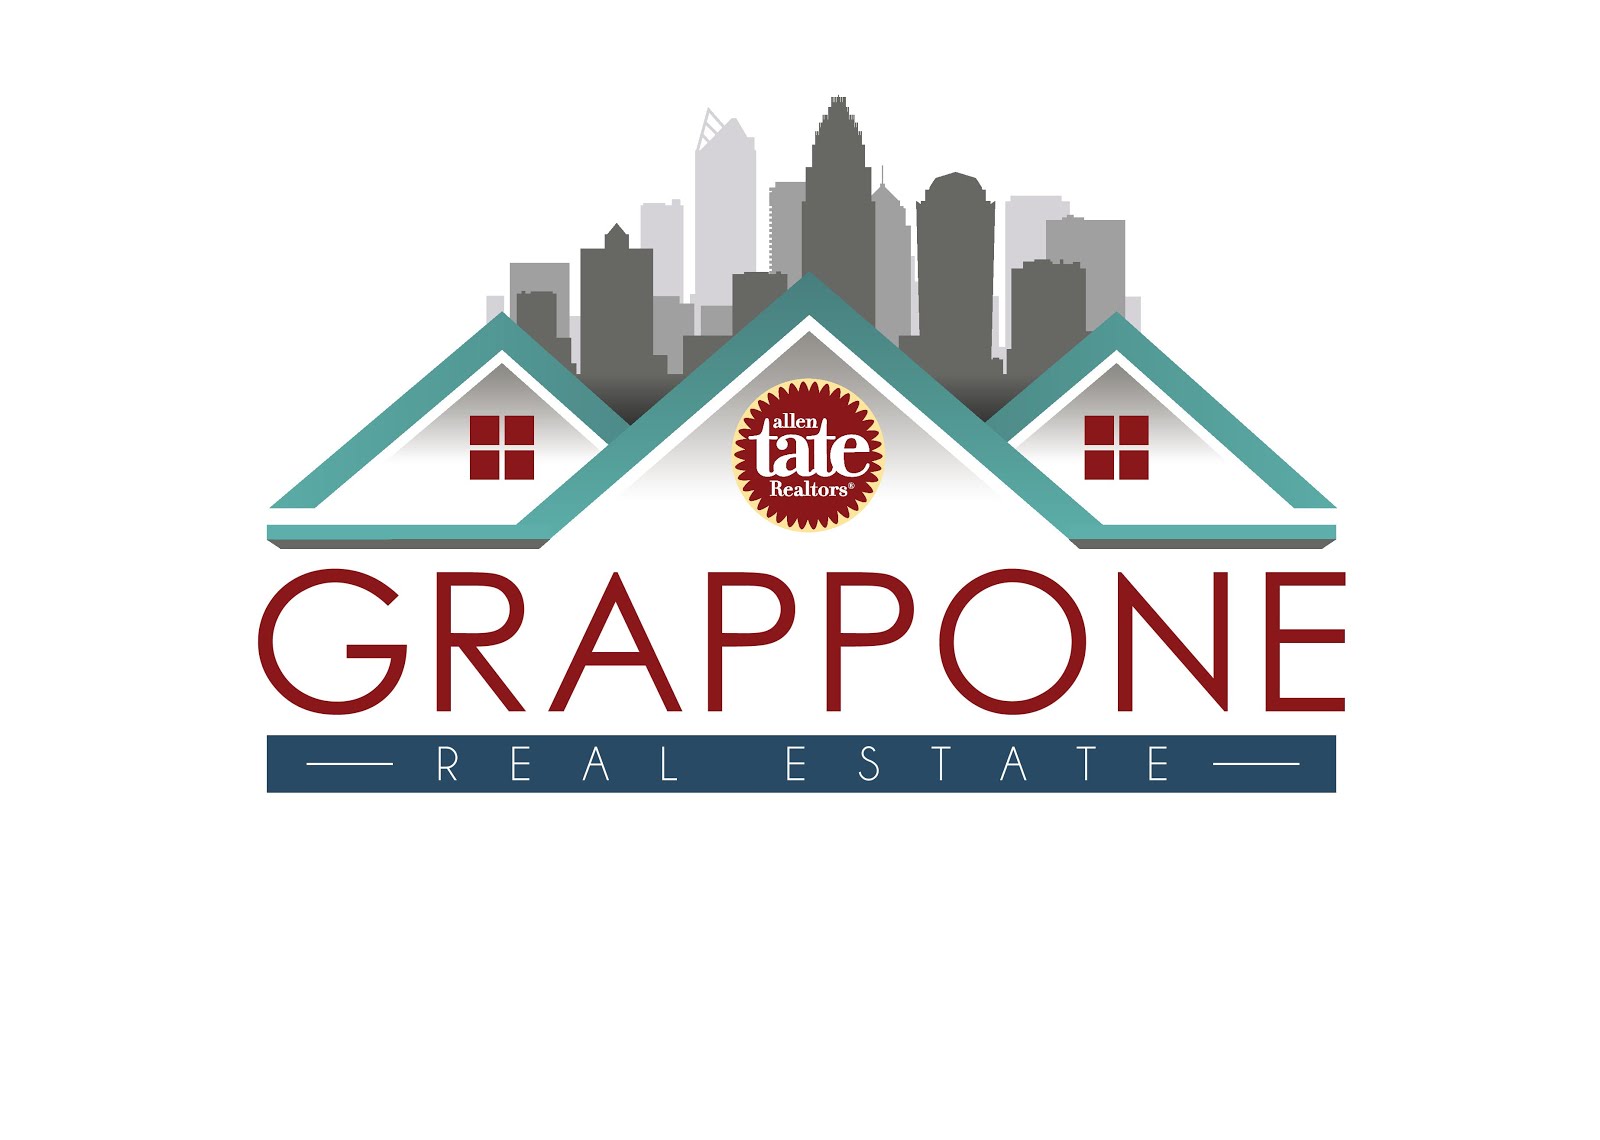 Grappone Real Estate